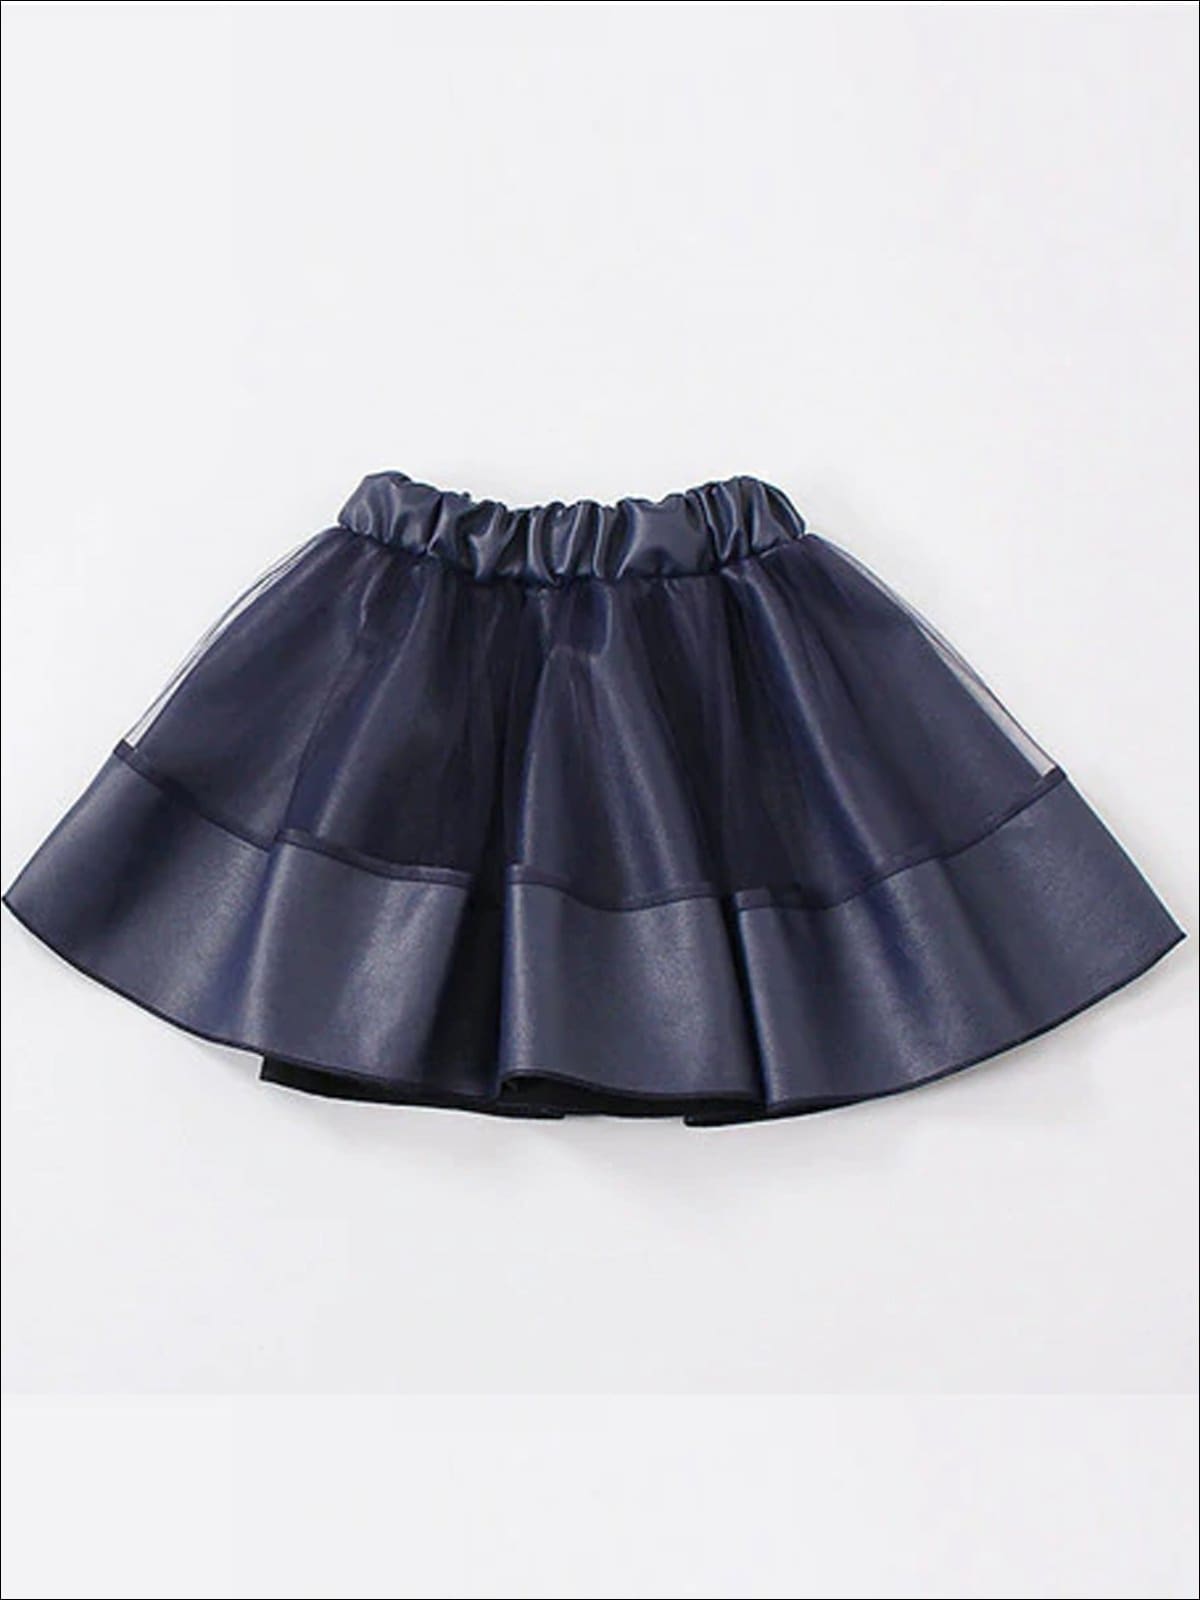 Girls Synthetic Leather Elastic Waist Tutu Skirt - Blue / 4T - Girls Skirt